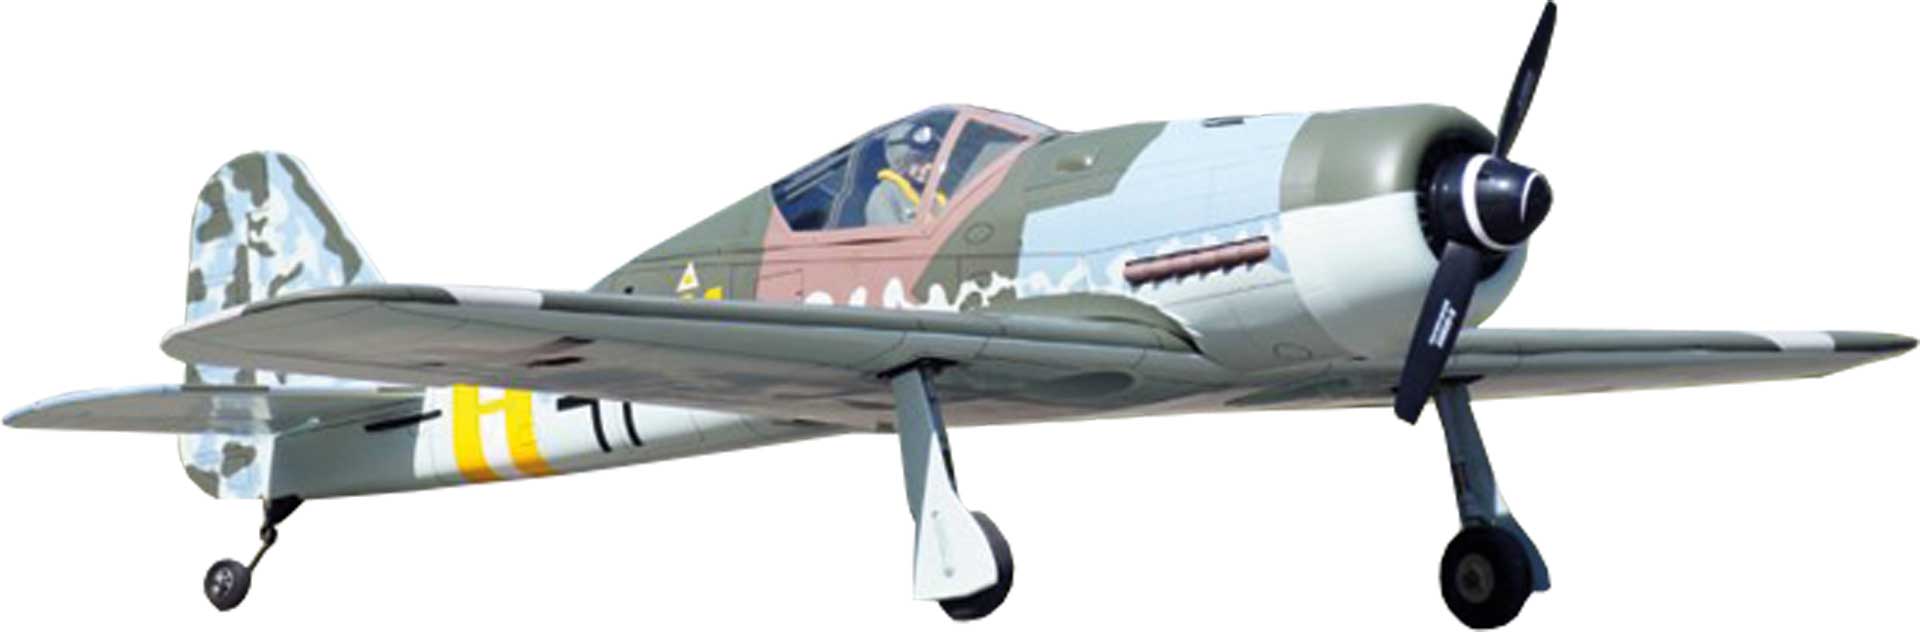 VQ Models FOCKE WULF FW-190 D "DORA" ARF 1,5M